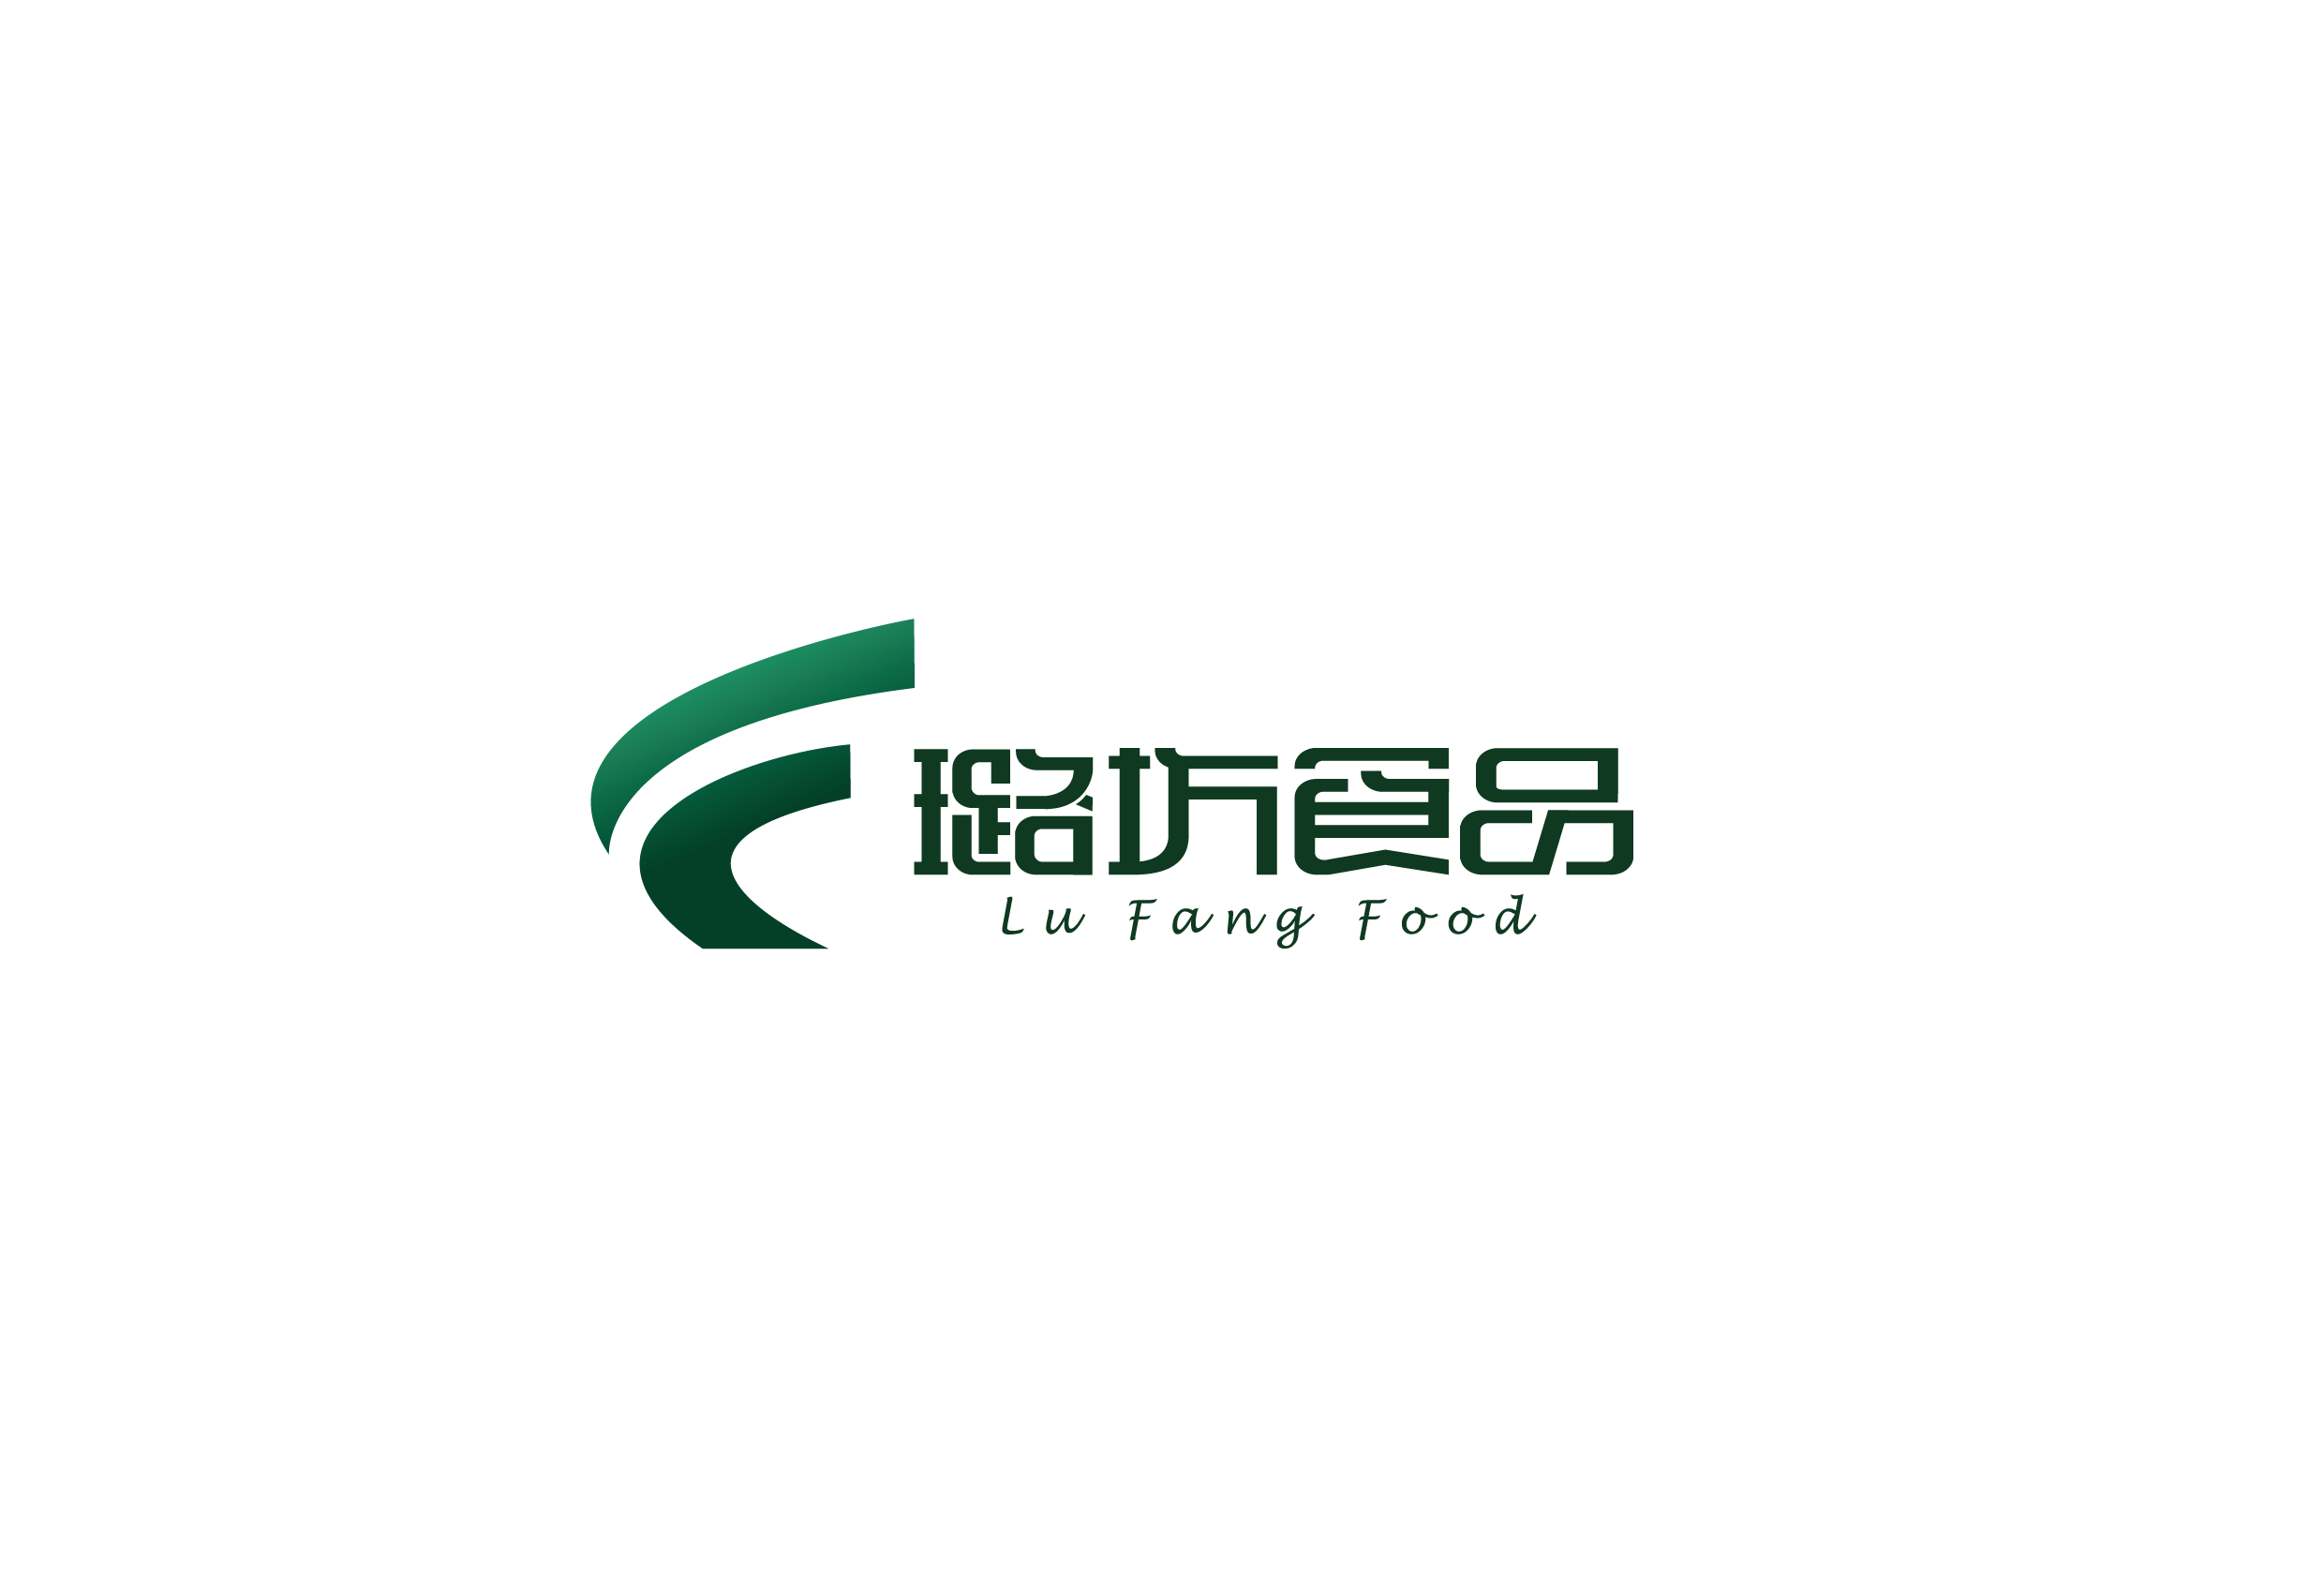  lufangfood